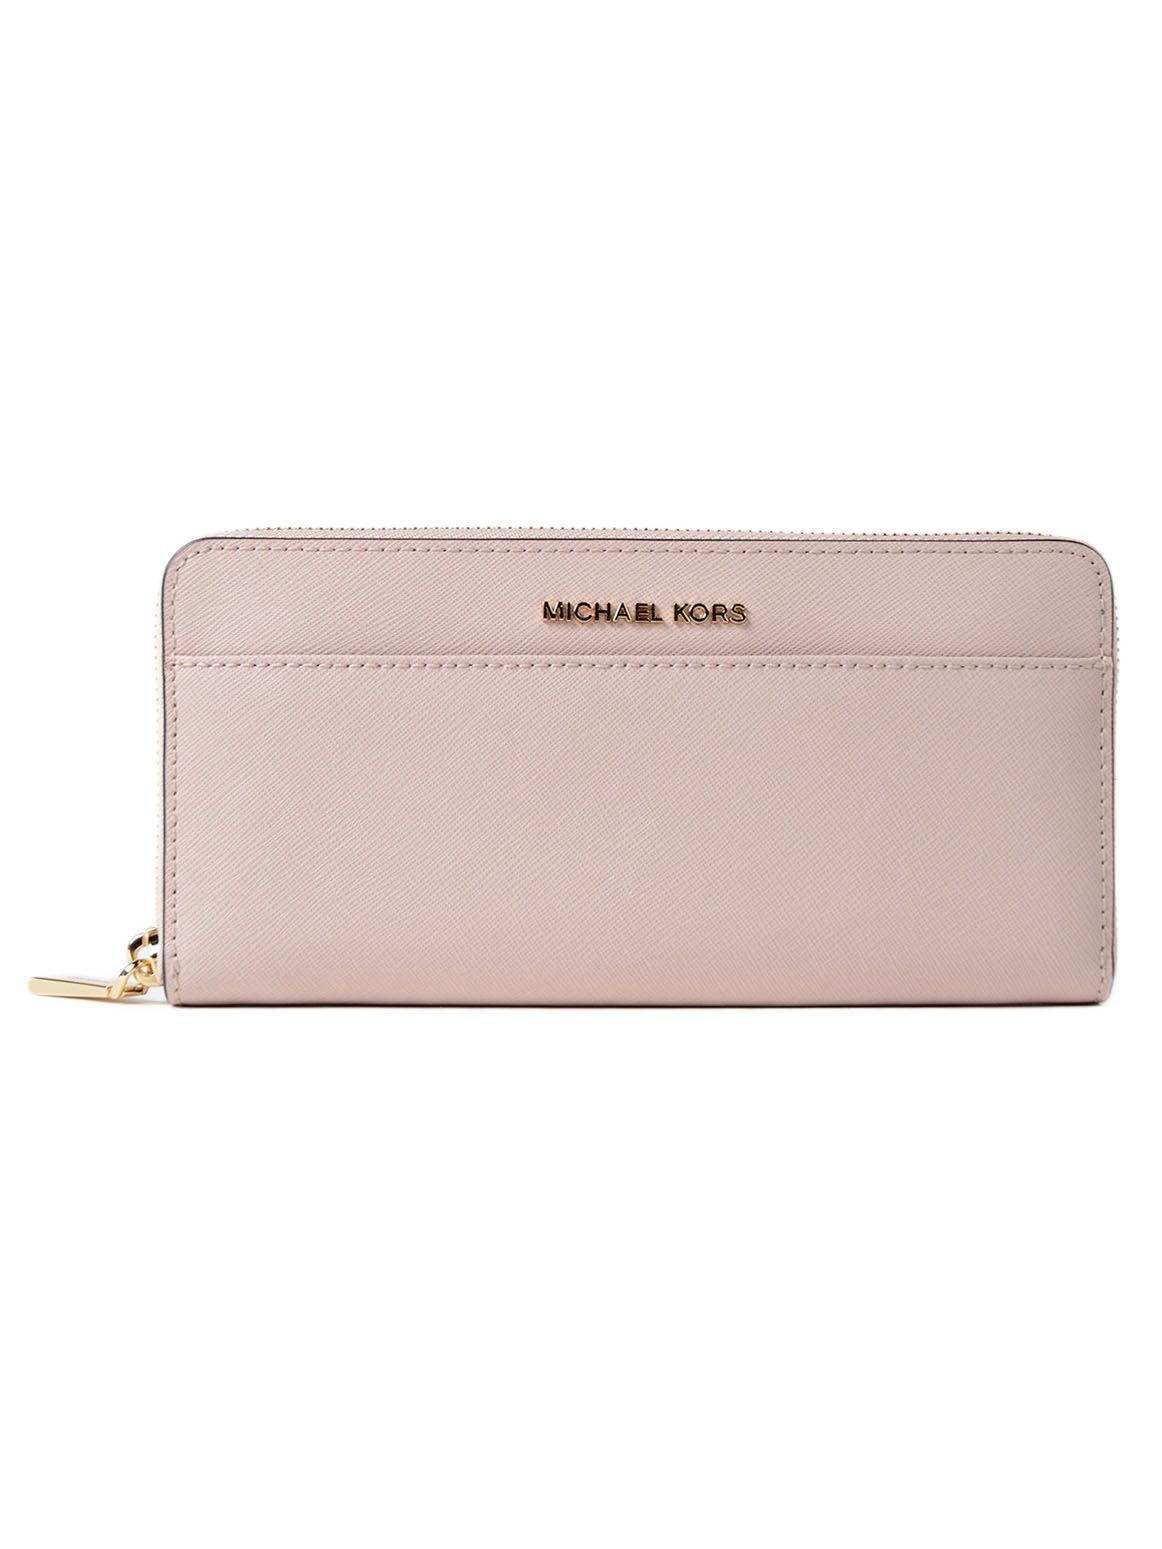 Michael Kors Zip Around Wallet In Soft Pink | ModeSens